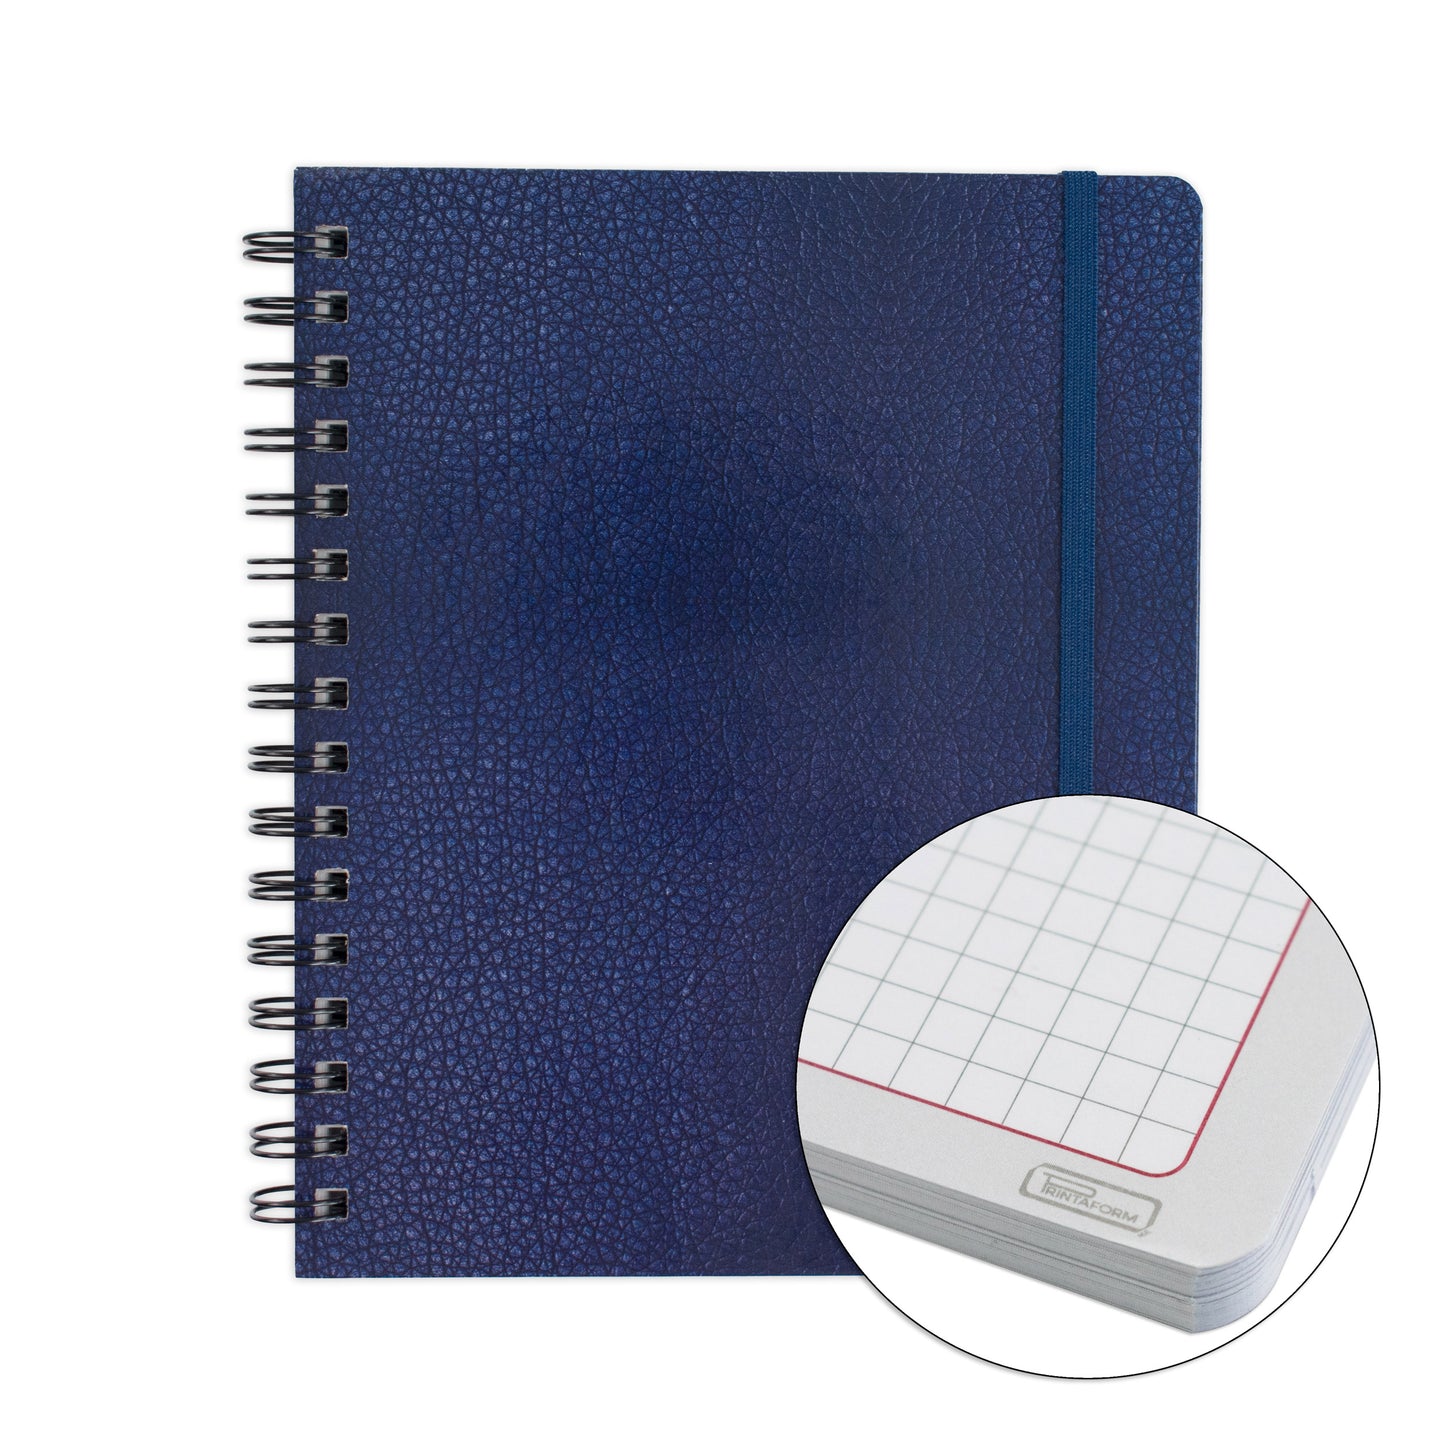 Cuaderno personalizado pasta dura opción 1 – 21x15cm – Tienda